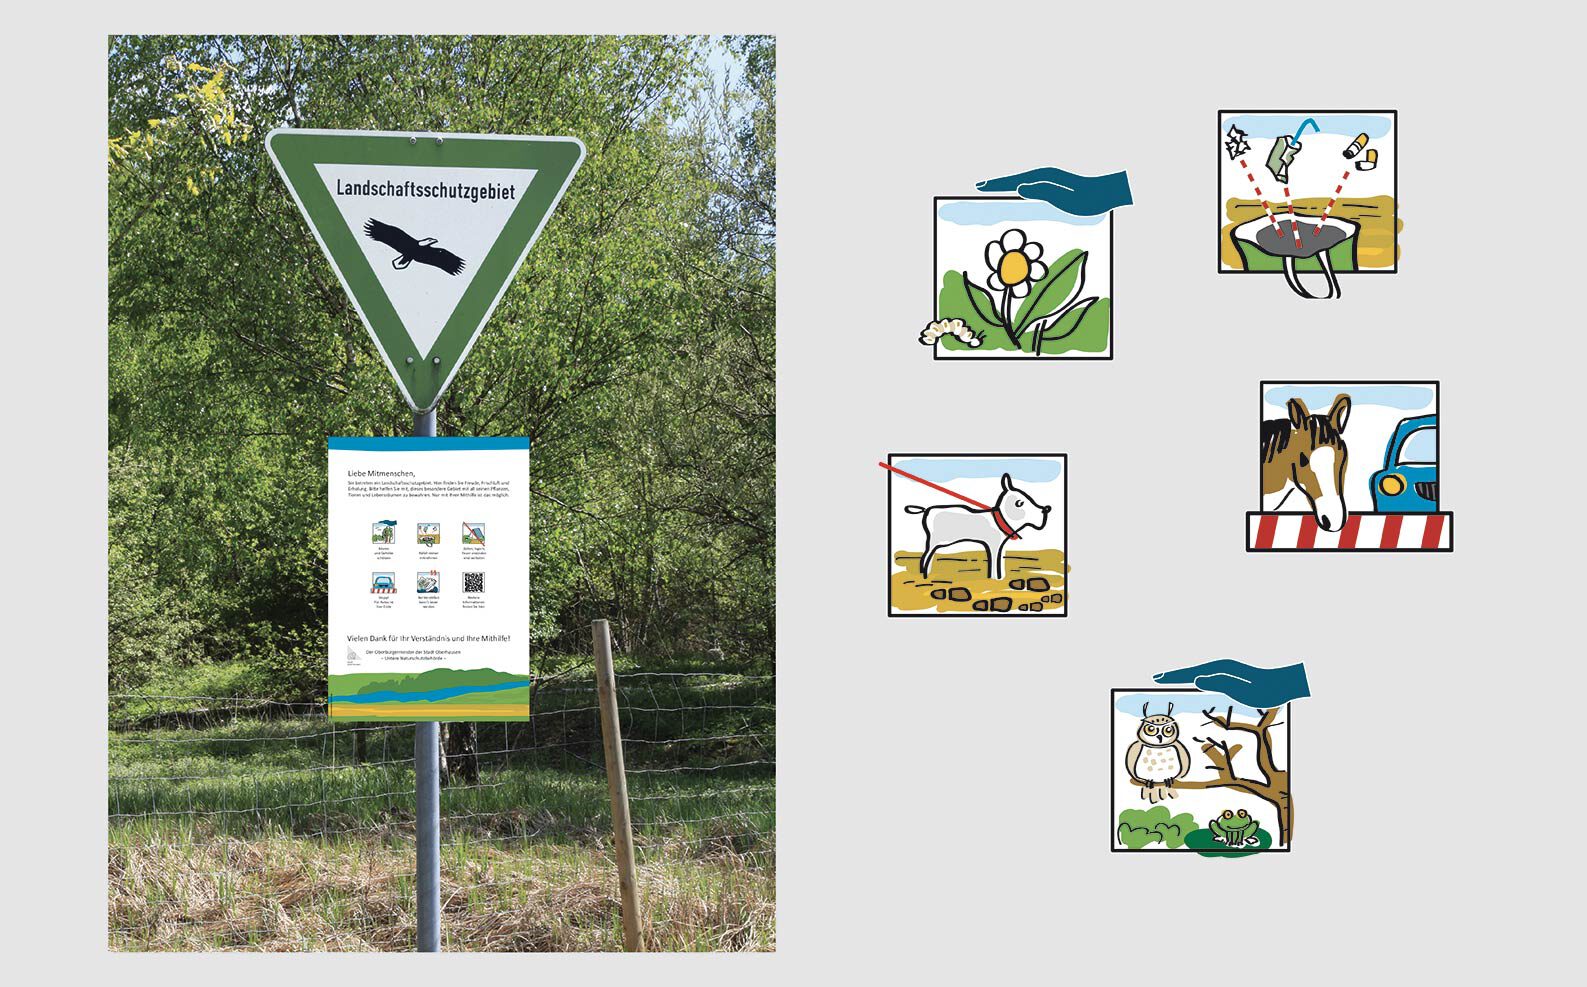 komplettes Schild und fünf einzelne Naturschutz-Illustrationen als Piktogramme